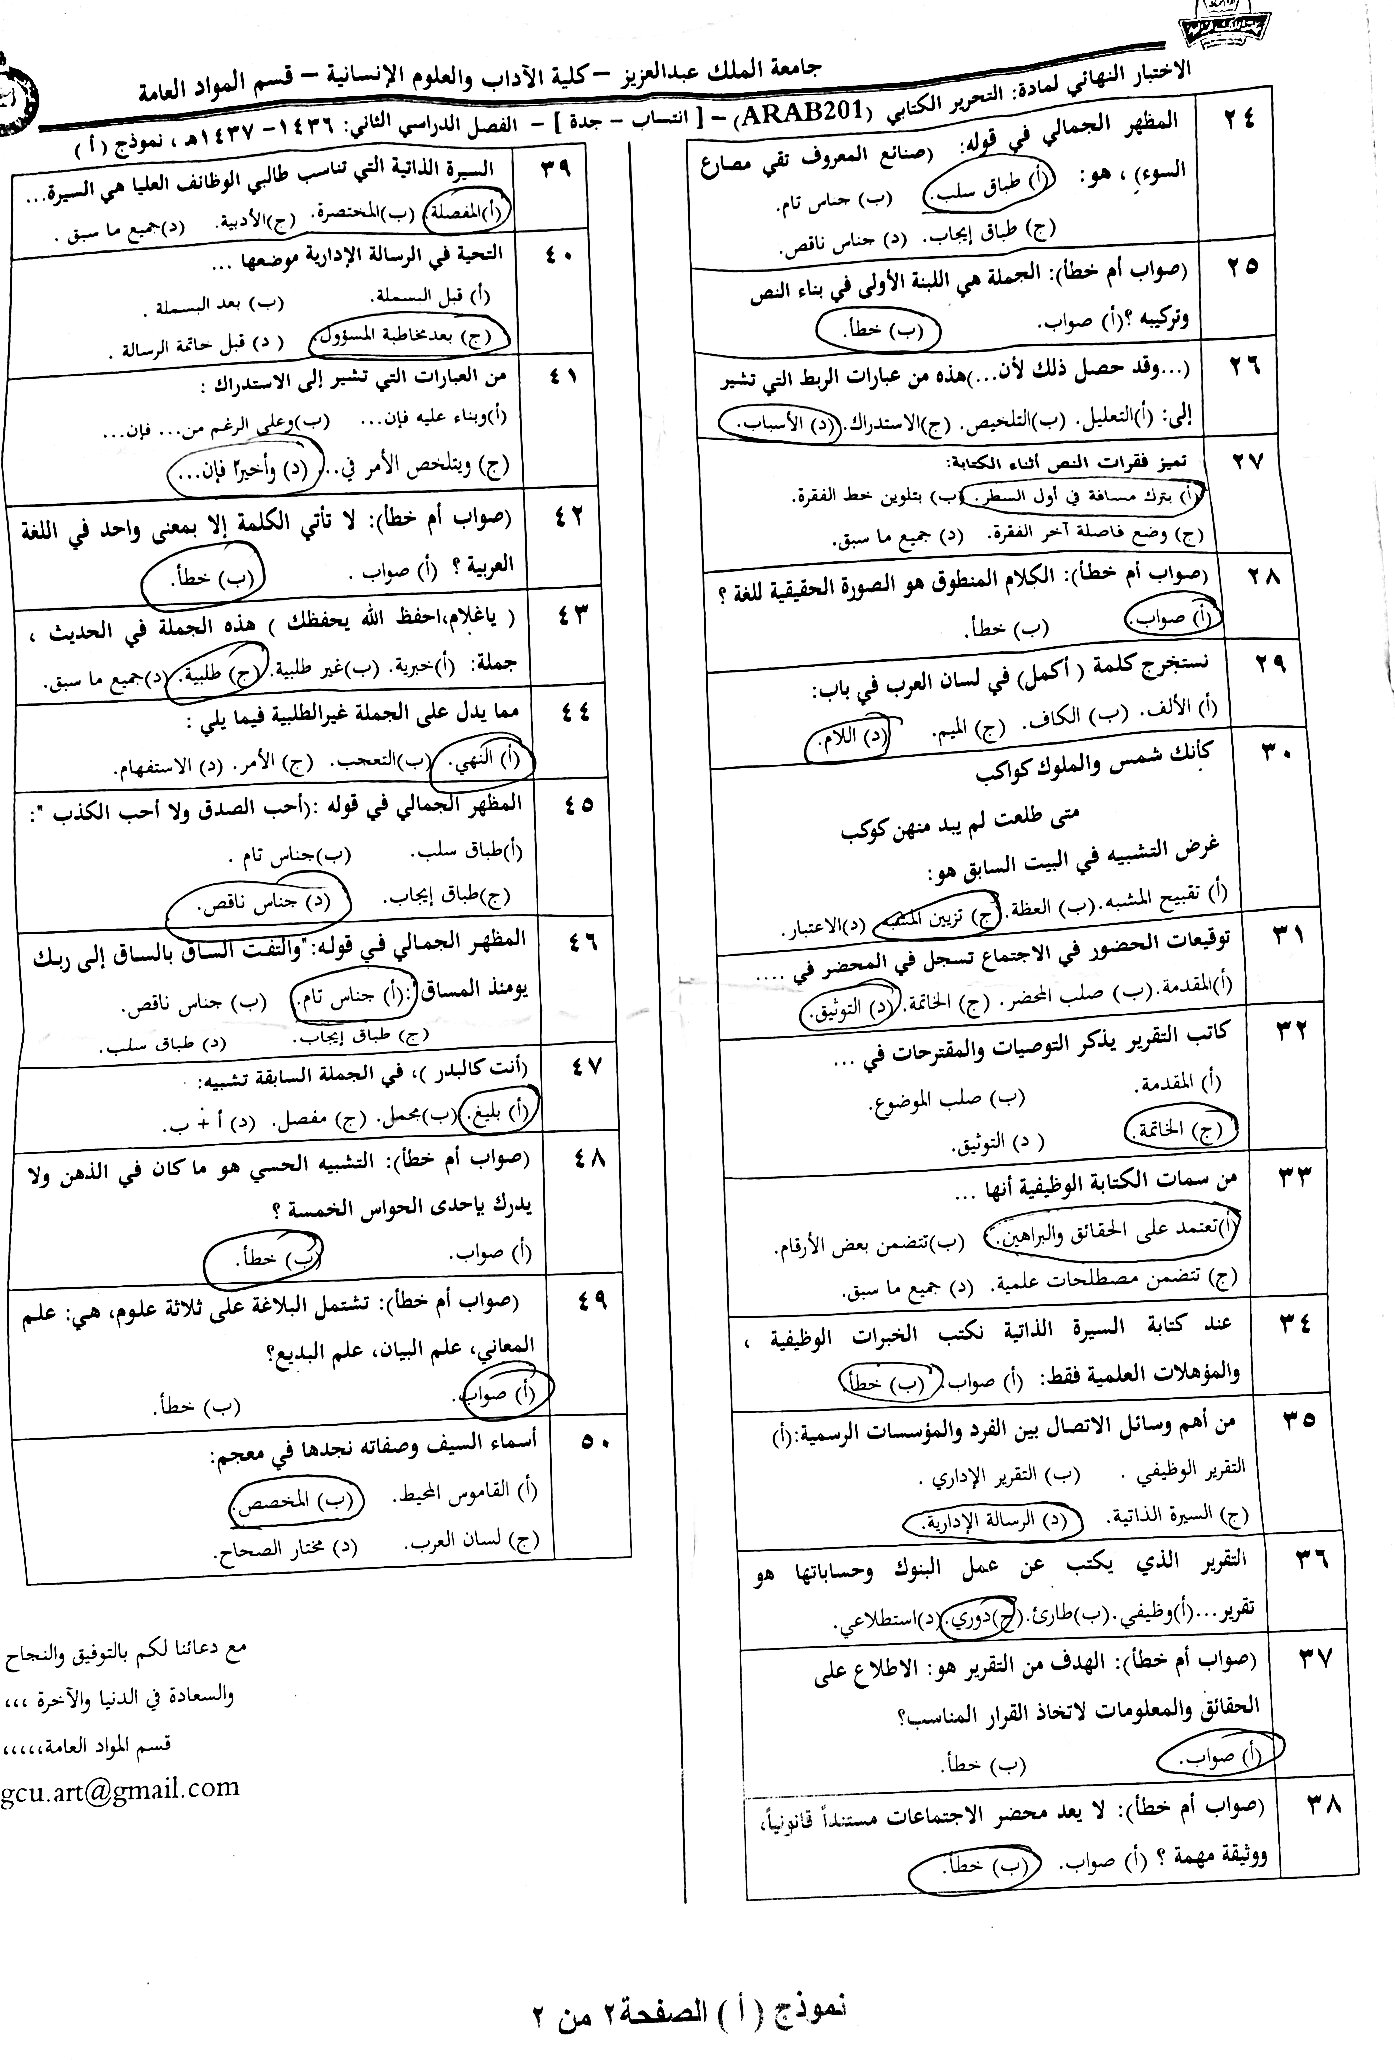 اختبار التحرير الكتابي arab 201 الفصل الثاني 1437هـ نموذج أ